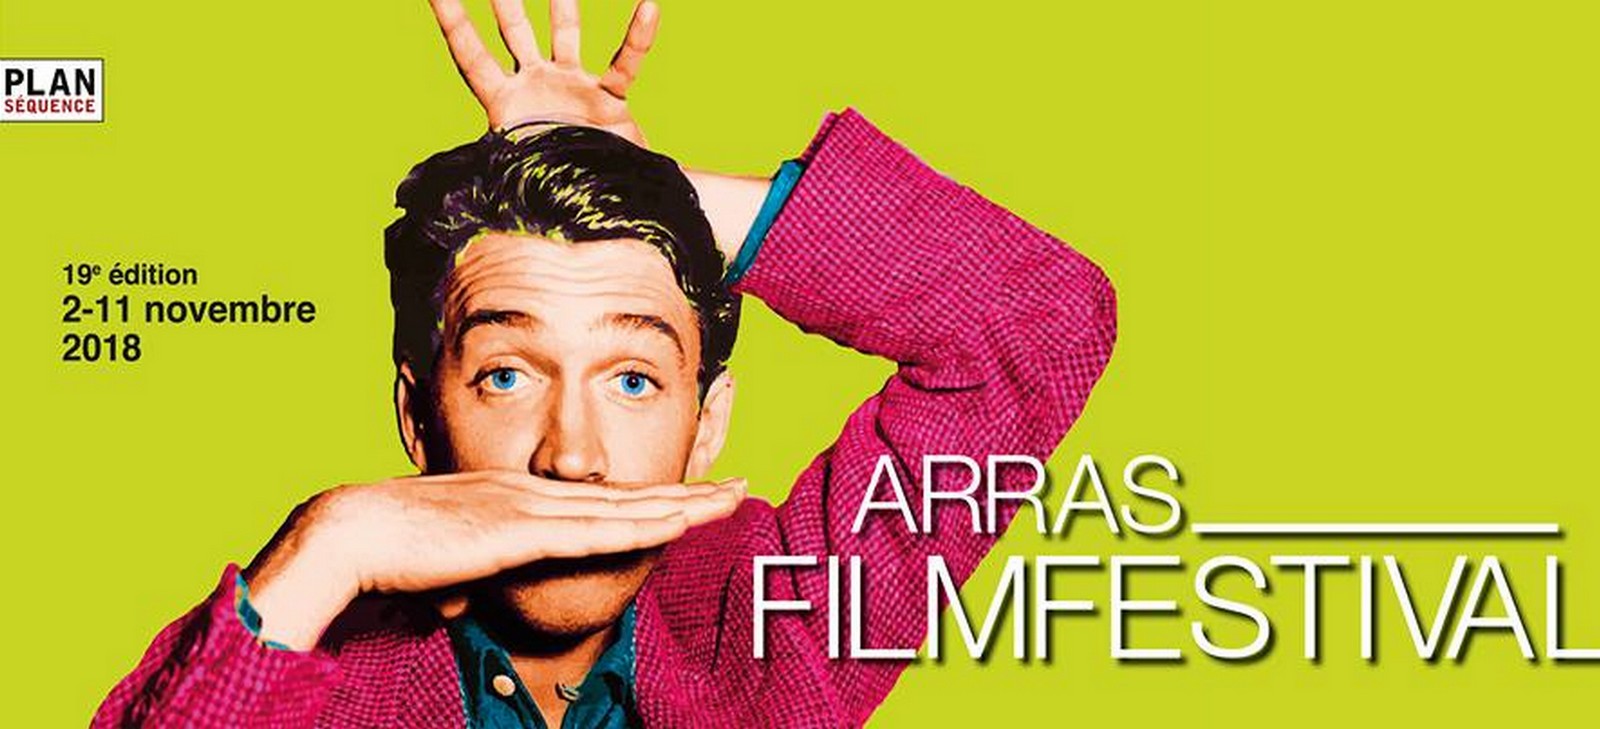 Arras Film Festival 2018